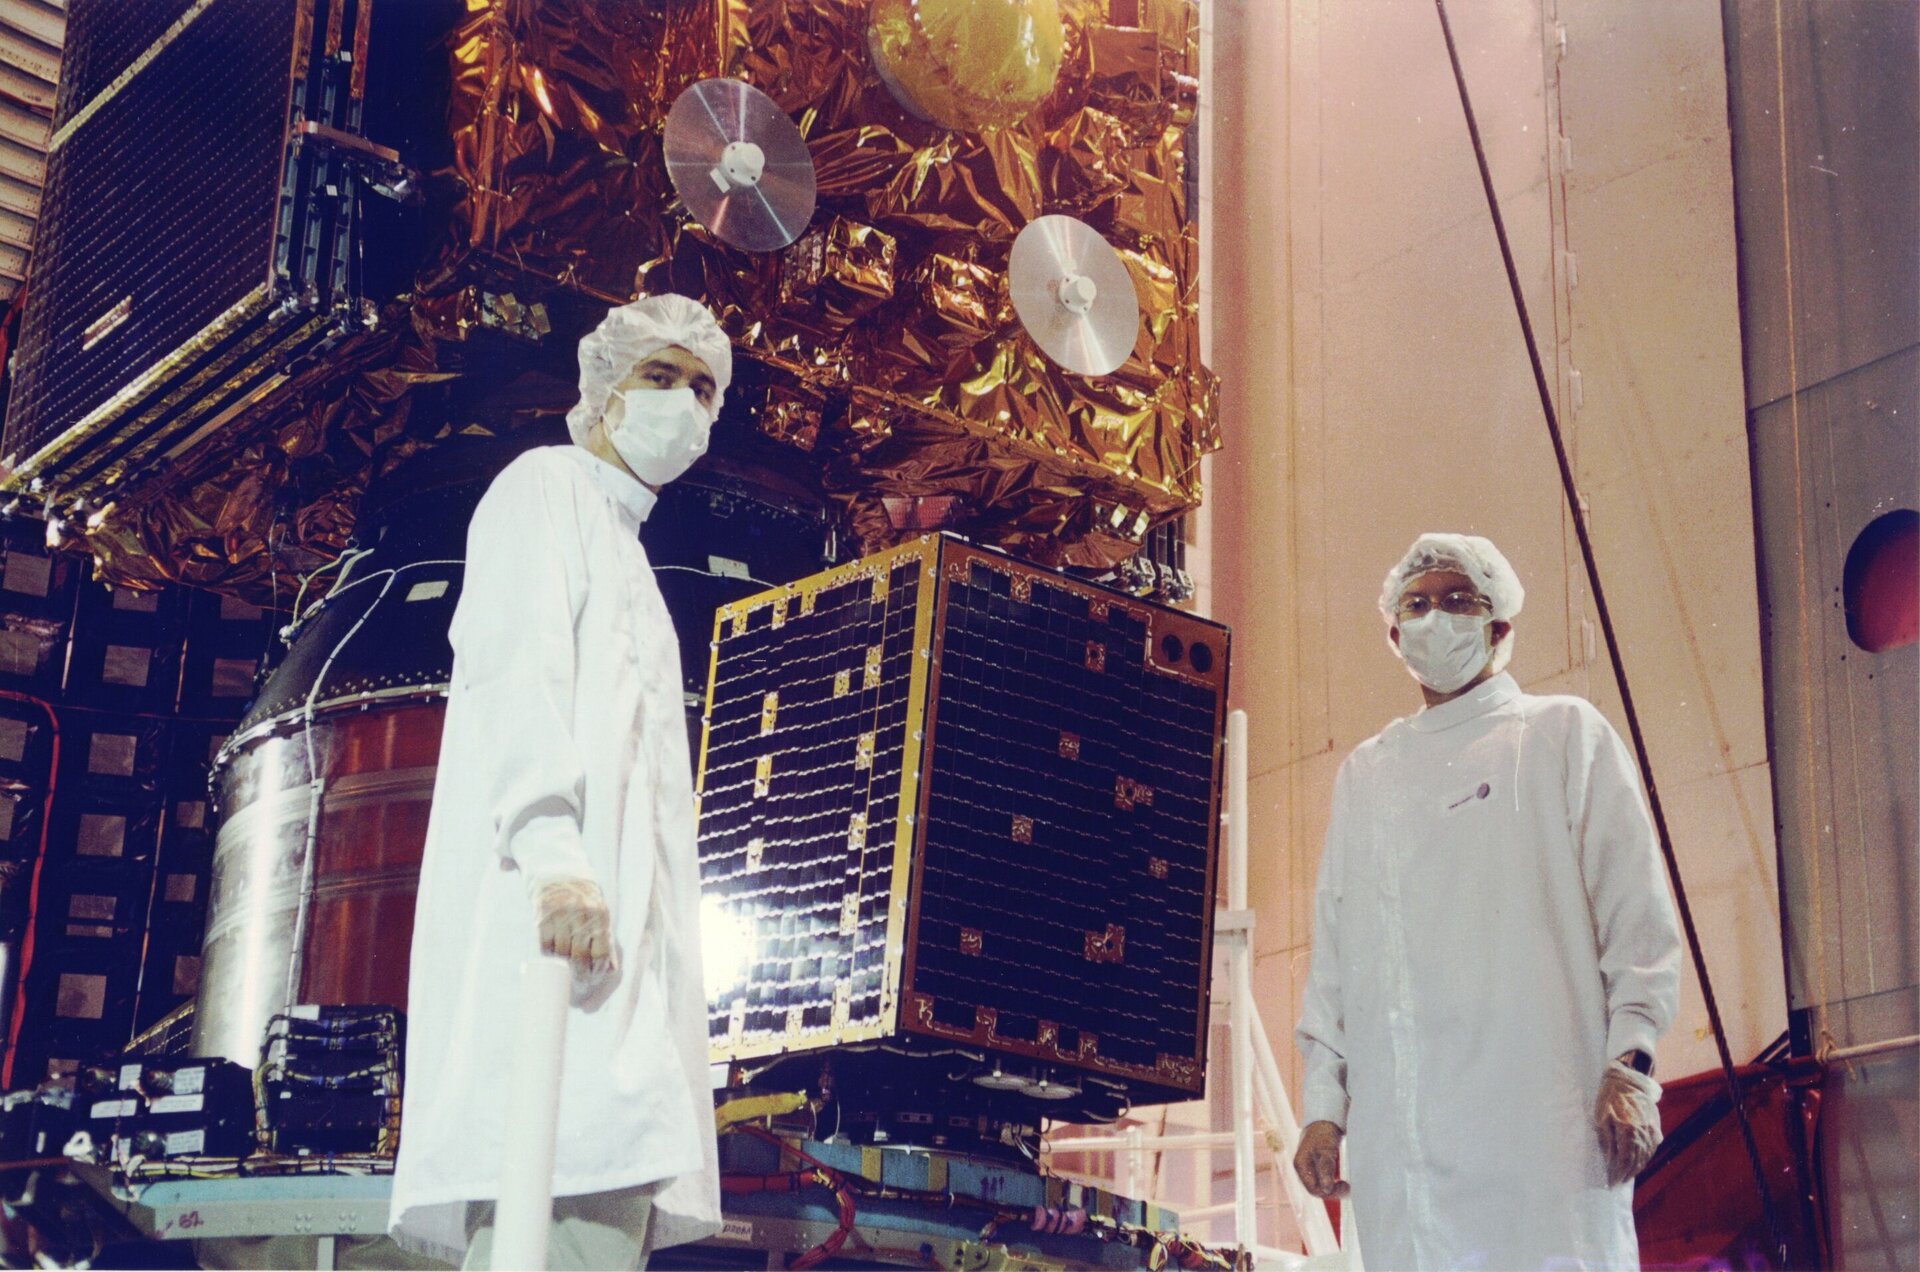 Le microsatellite technologique PROBA-1 de l’ESA est de fabrication belge.